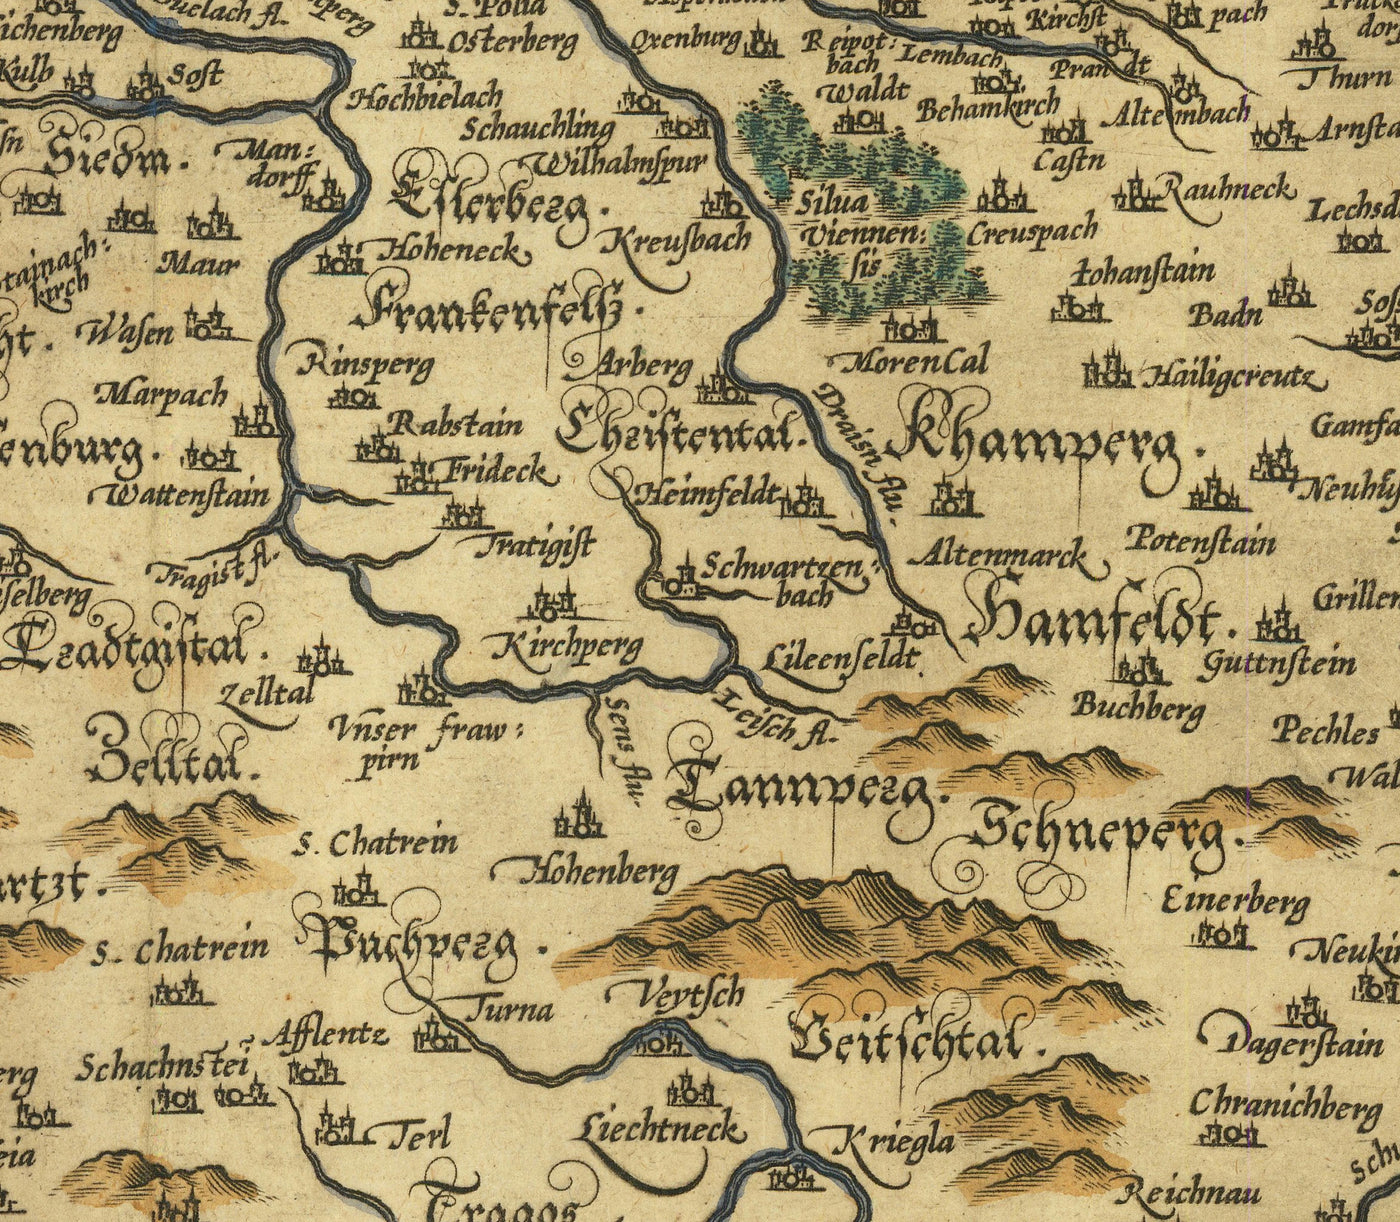 Ancienne carte de l'Autriche par Abraham Ortelius en 1594 - Vienne, lac Neusiedl, Tulin, Bratislava, Wiener Neustadt